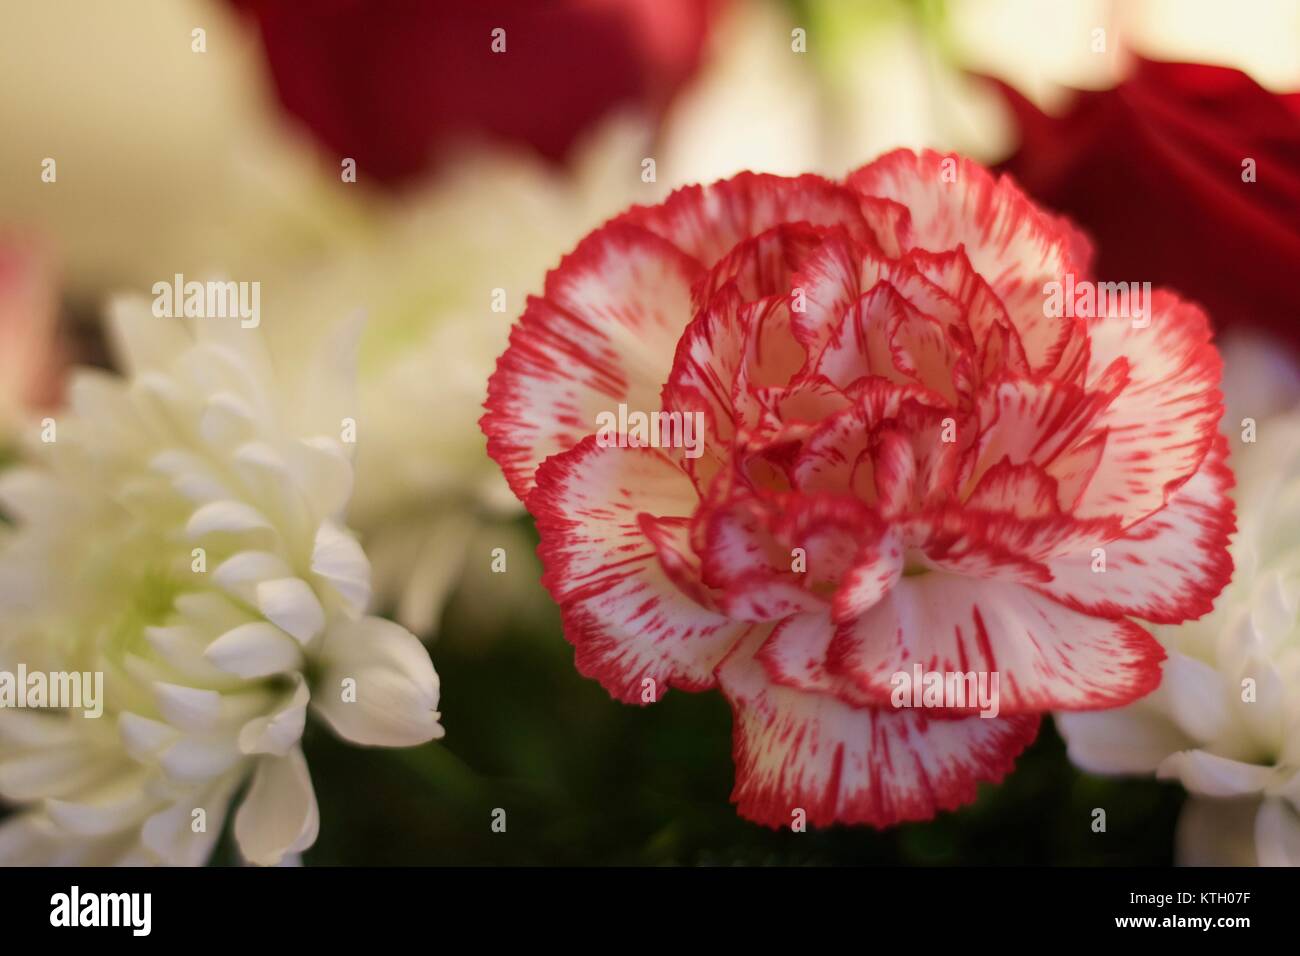 Interno la profondità di campo di una foto di stock di Red Carnation fiore in primo piano e bianco fiori di garofano in background Foto Stock